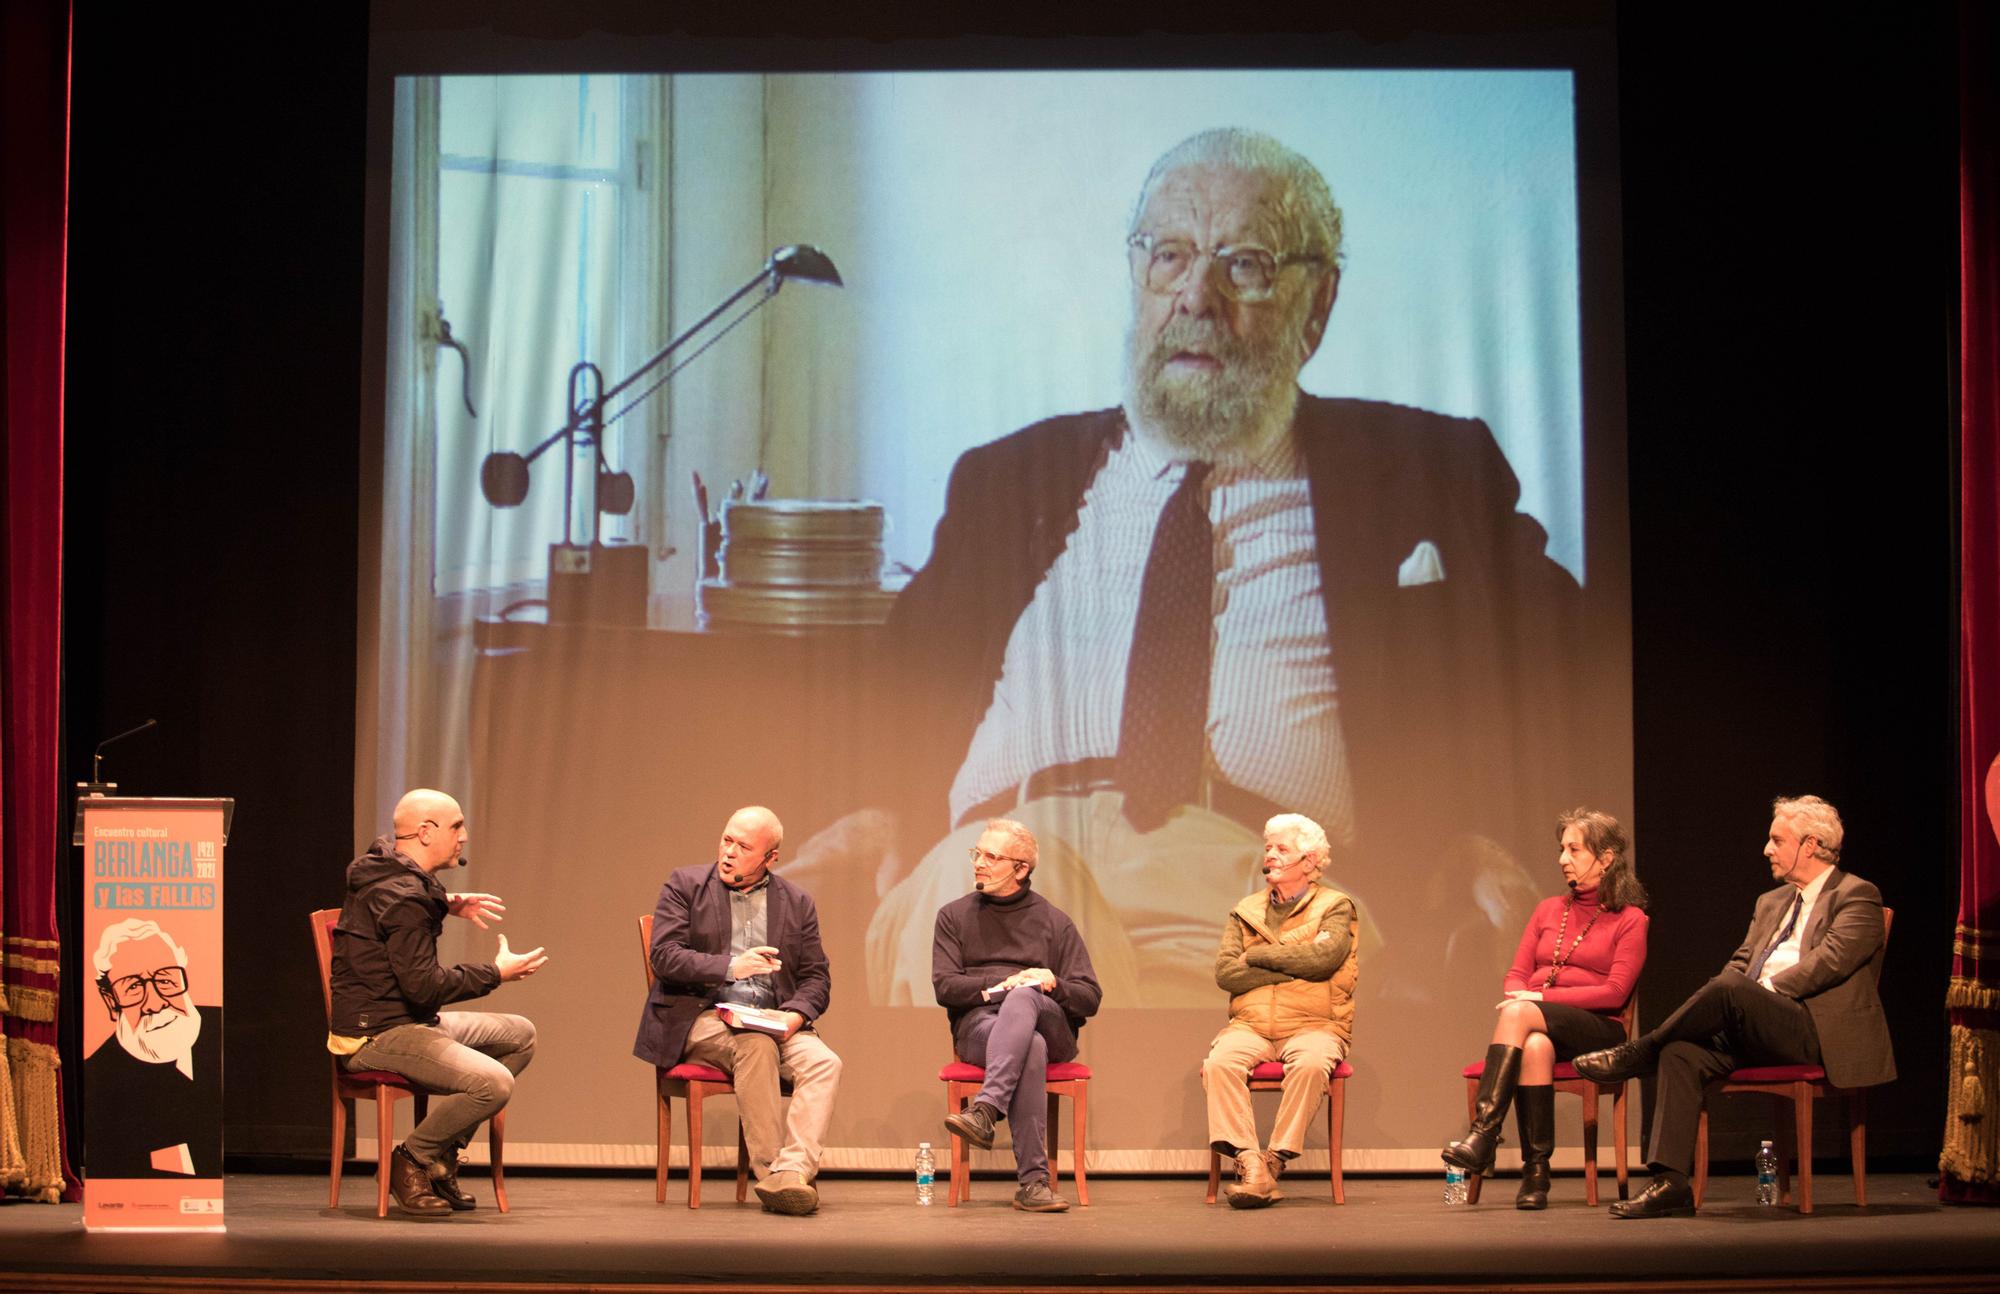 Encuentro cultural sobre Berlanga y las Fallas, organizado por Levante-EMV en el Teatro Talía.